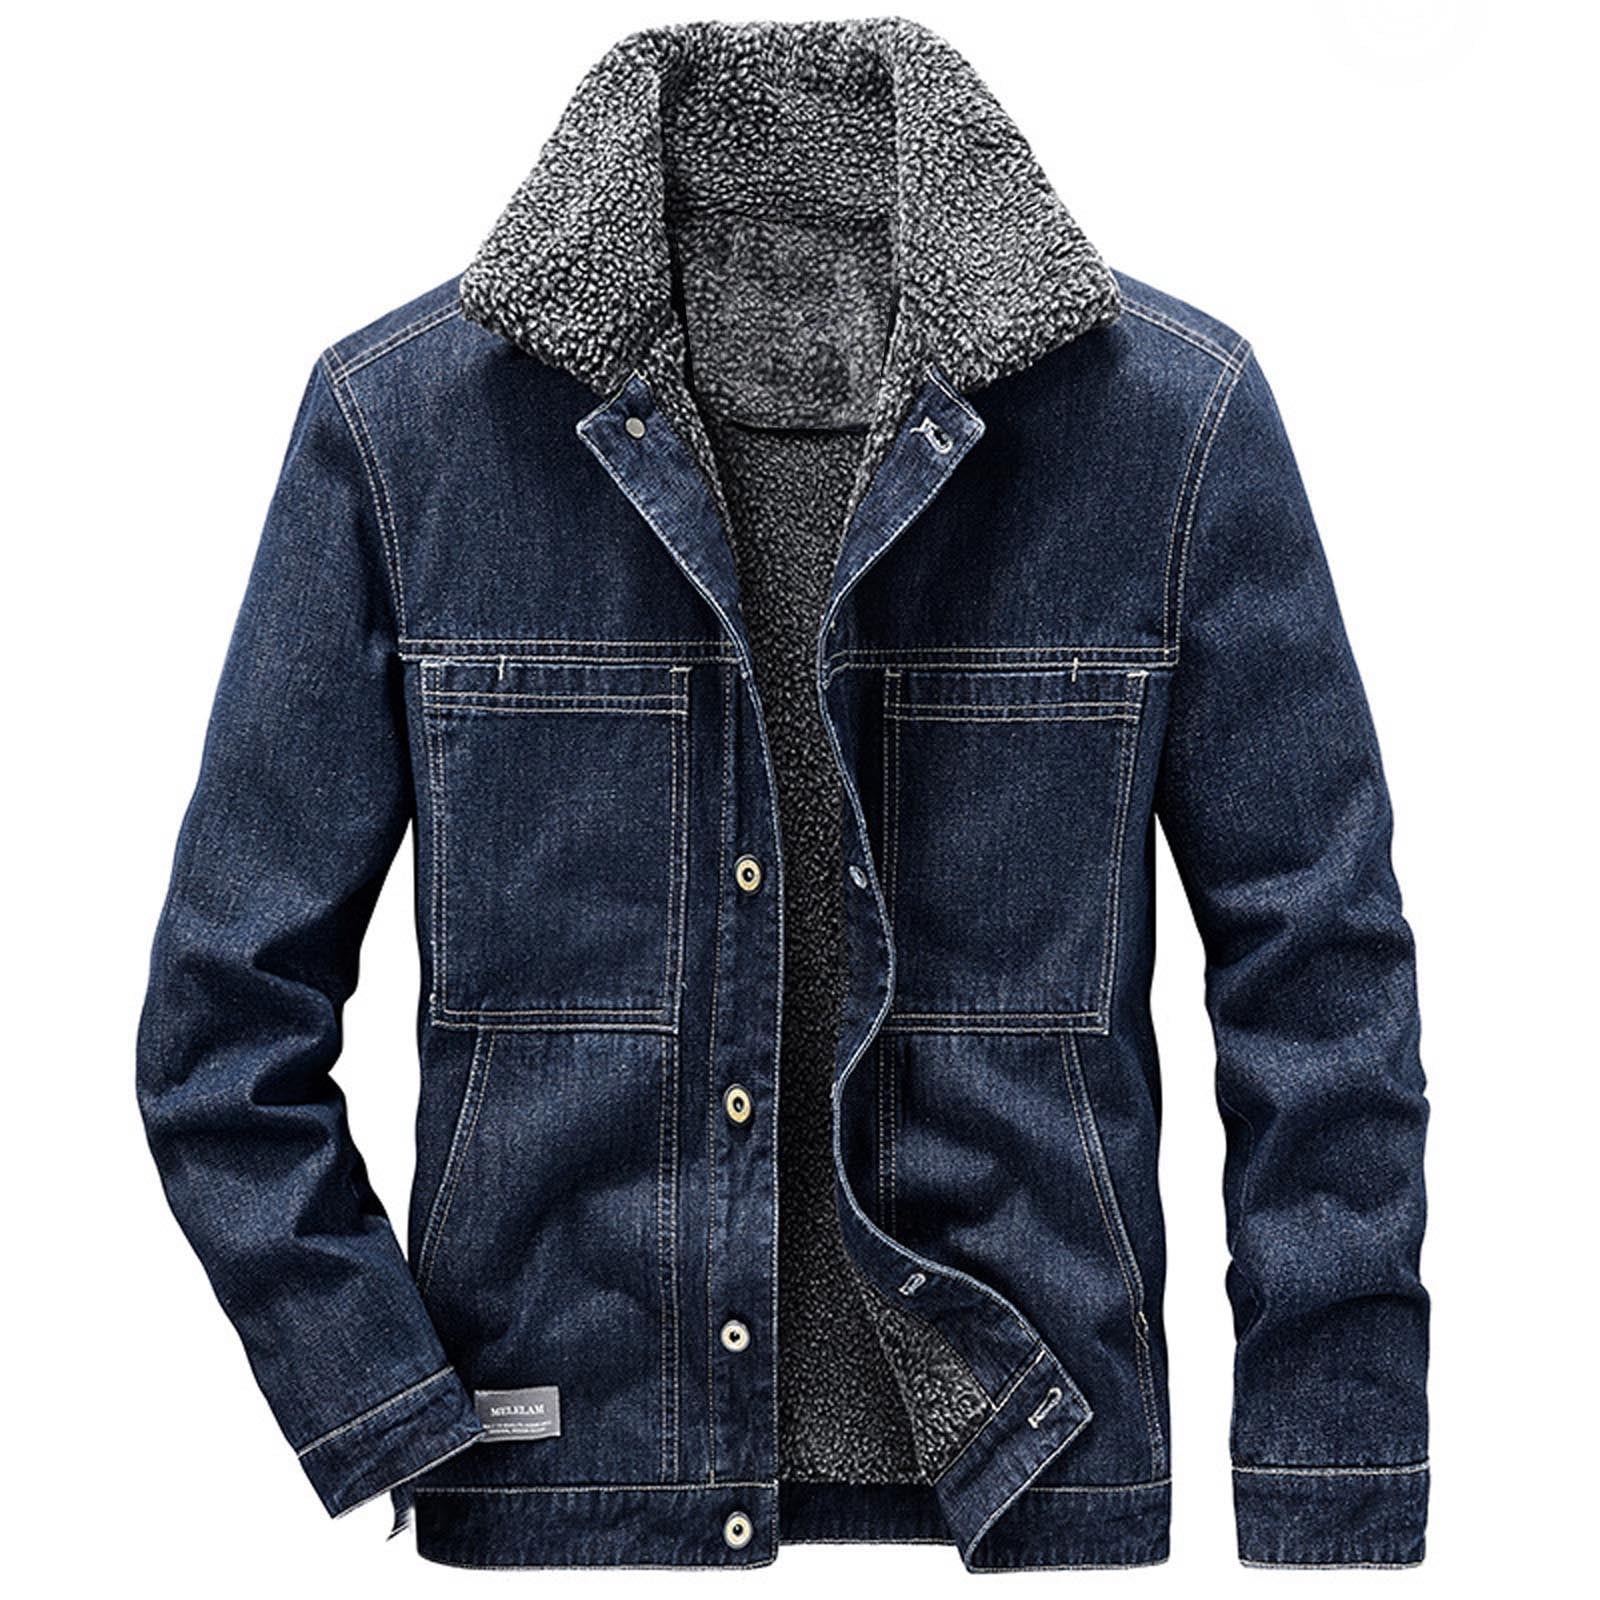 Buy Fuwenni Men's Sherpa Fleece Lined Denim Jacket Trucker Jacket Winter Jean  Jacket Cowboy Coat, Blue, X-Large at Amazon.in